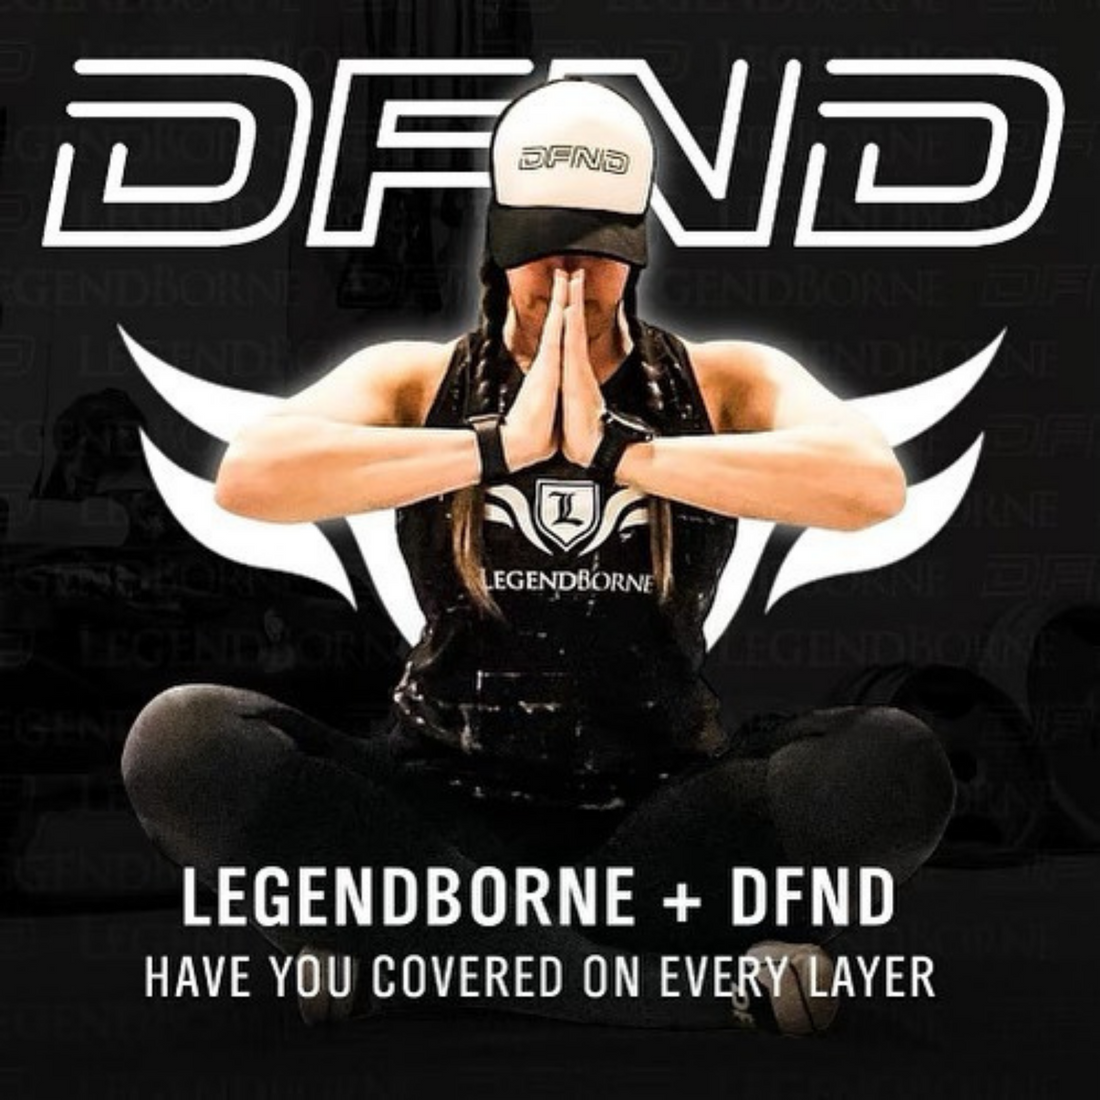 DFND and LegendBorne Join Together in Unique Partnership